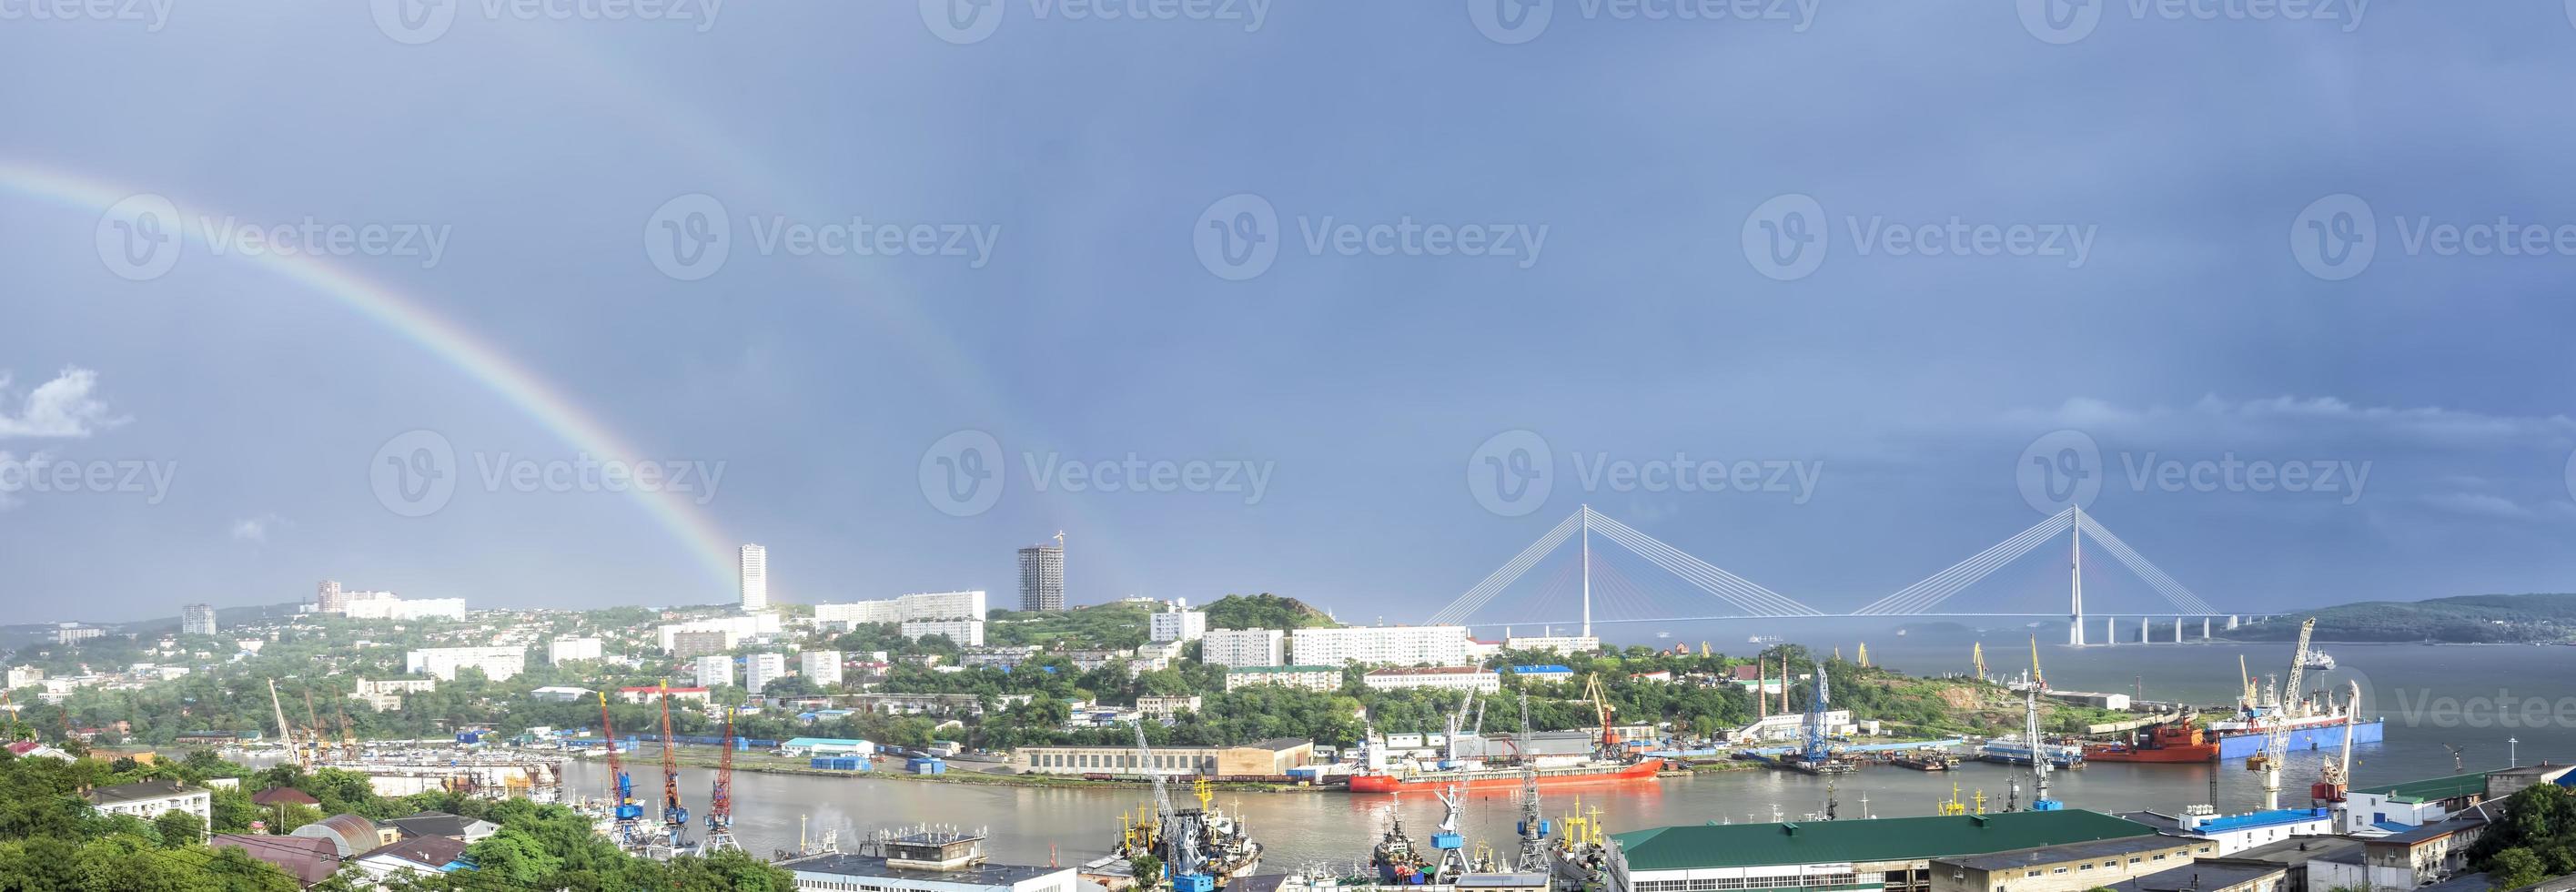 panorama sur le paysage de la ville avec vue sur le pont russe photo